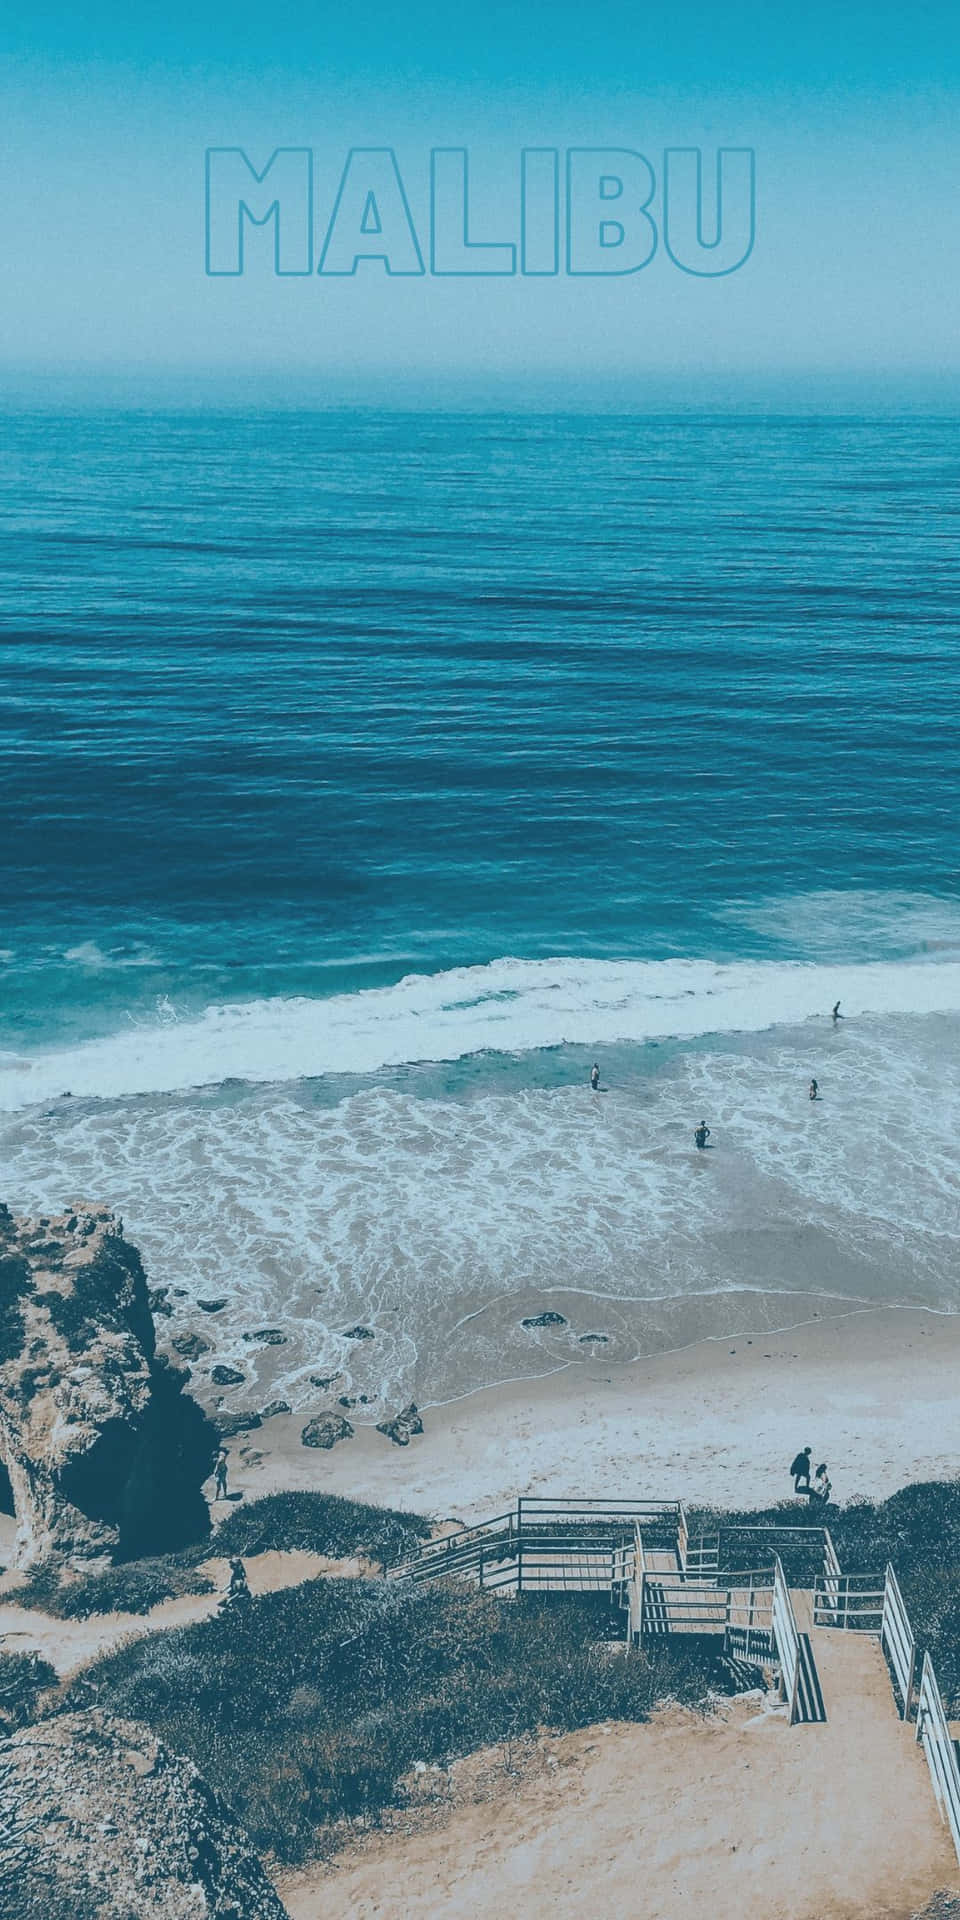 Vistaaerea Della Spiaggia, Sfondo Malibu Per Pixel 3